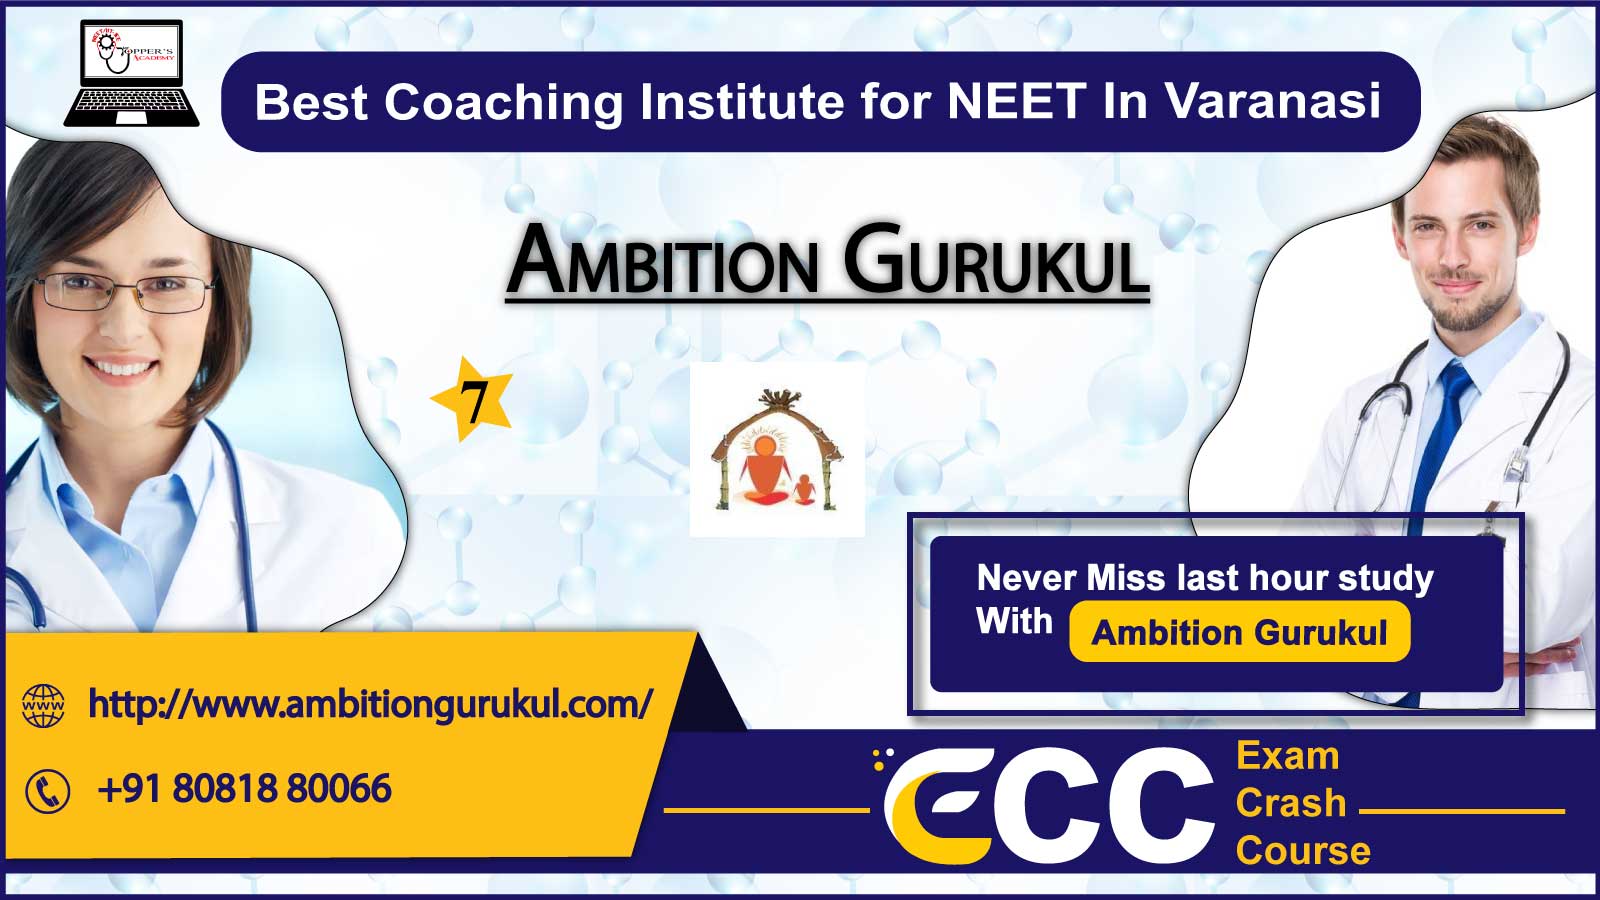 Ambition Gurukul NEET Coaching in Varanasi